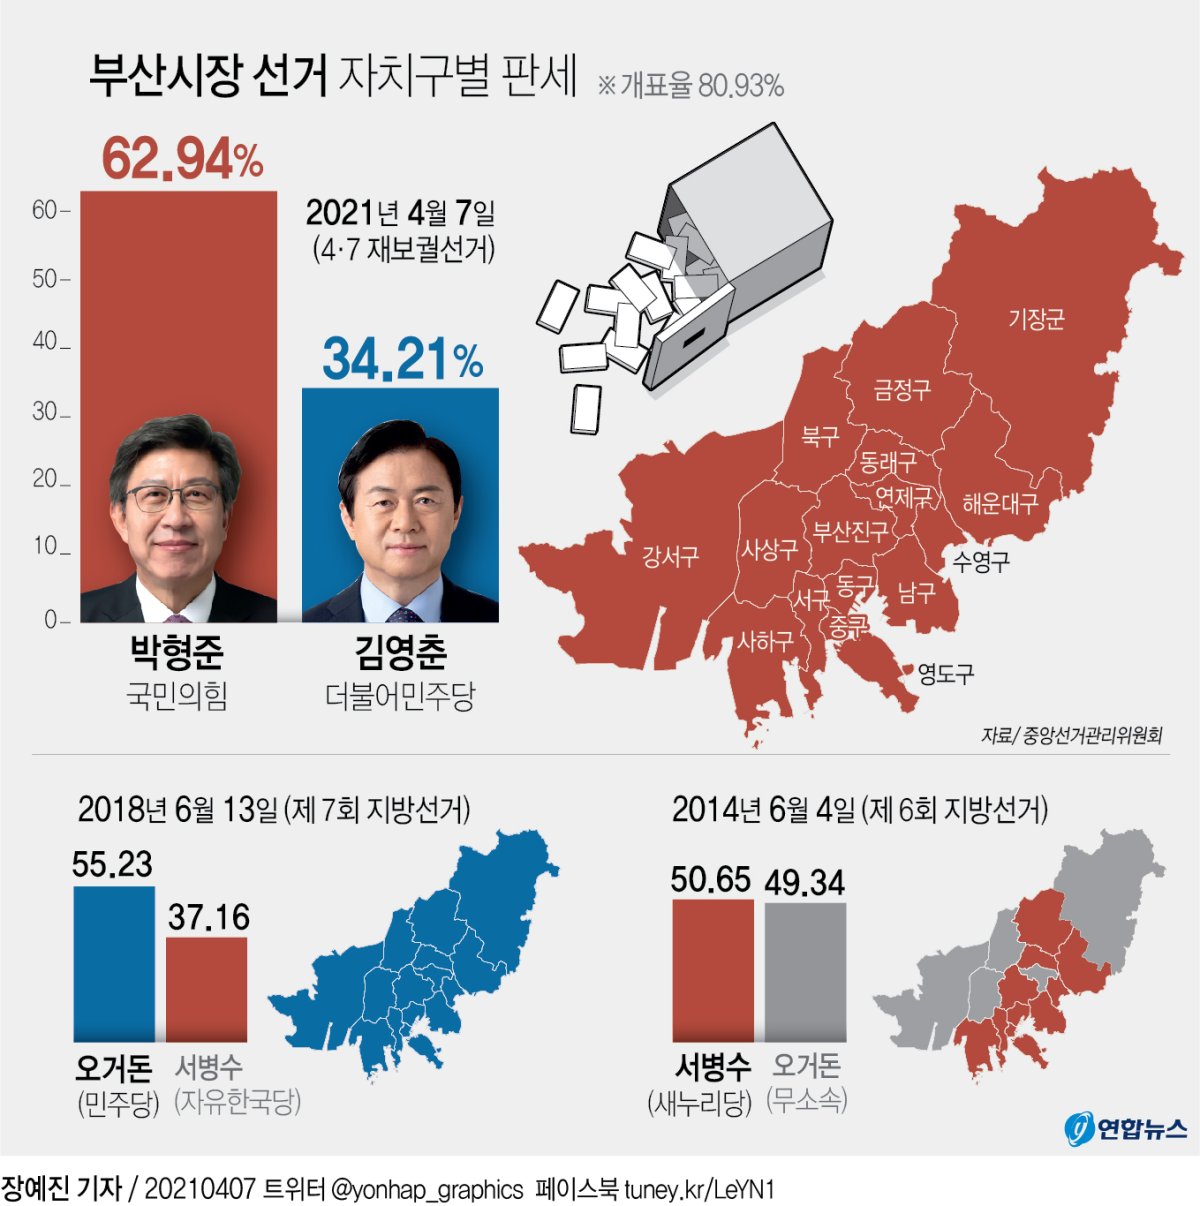 [그래픽] 부산시장 선거 자치구별 판세